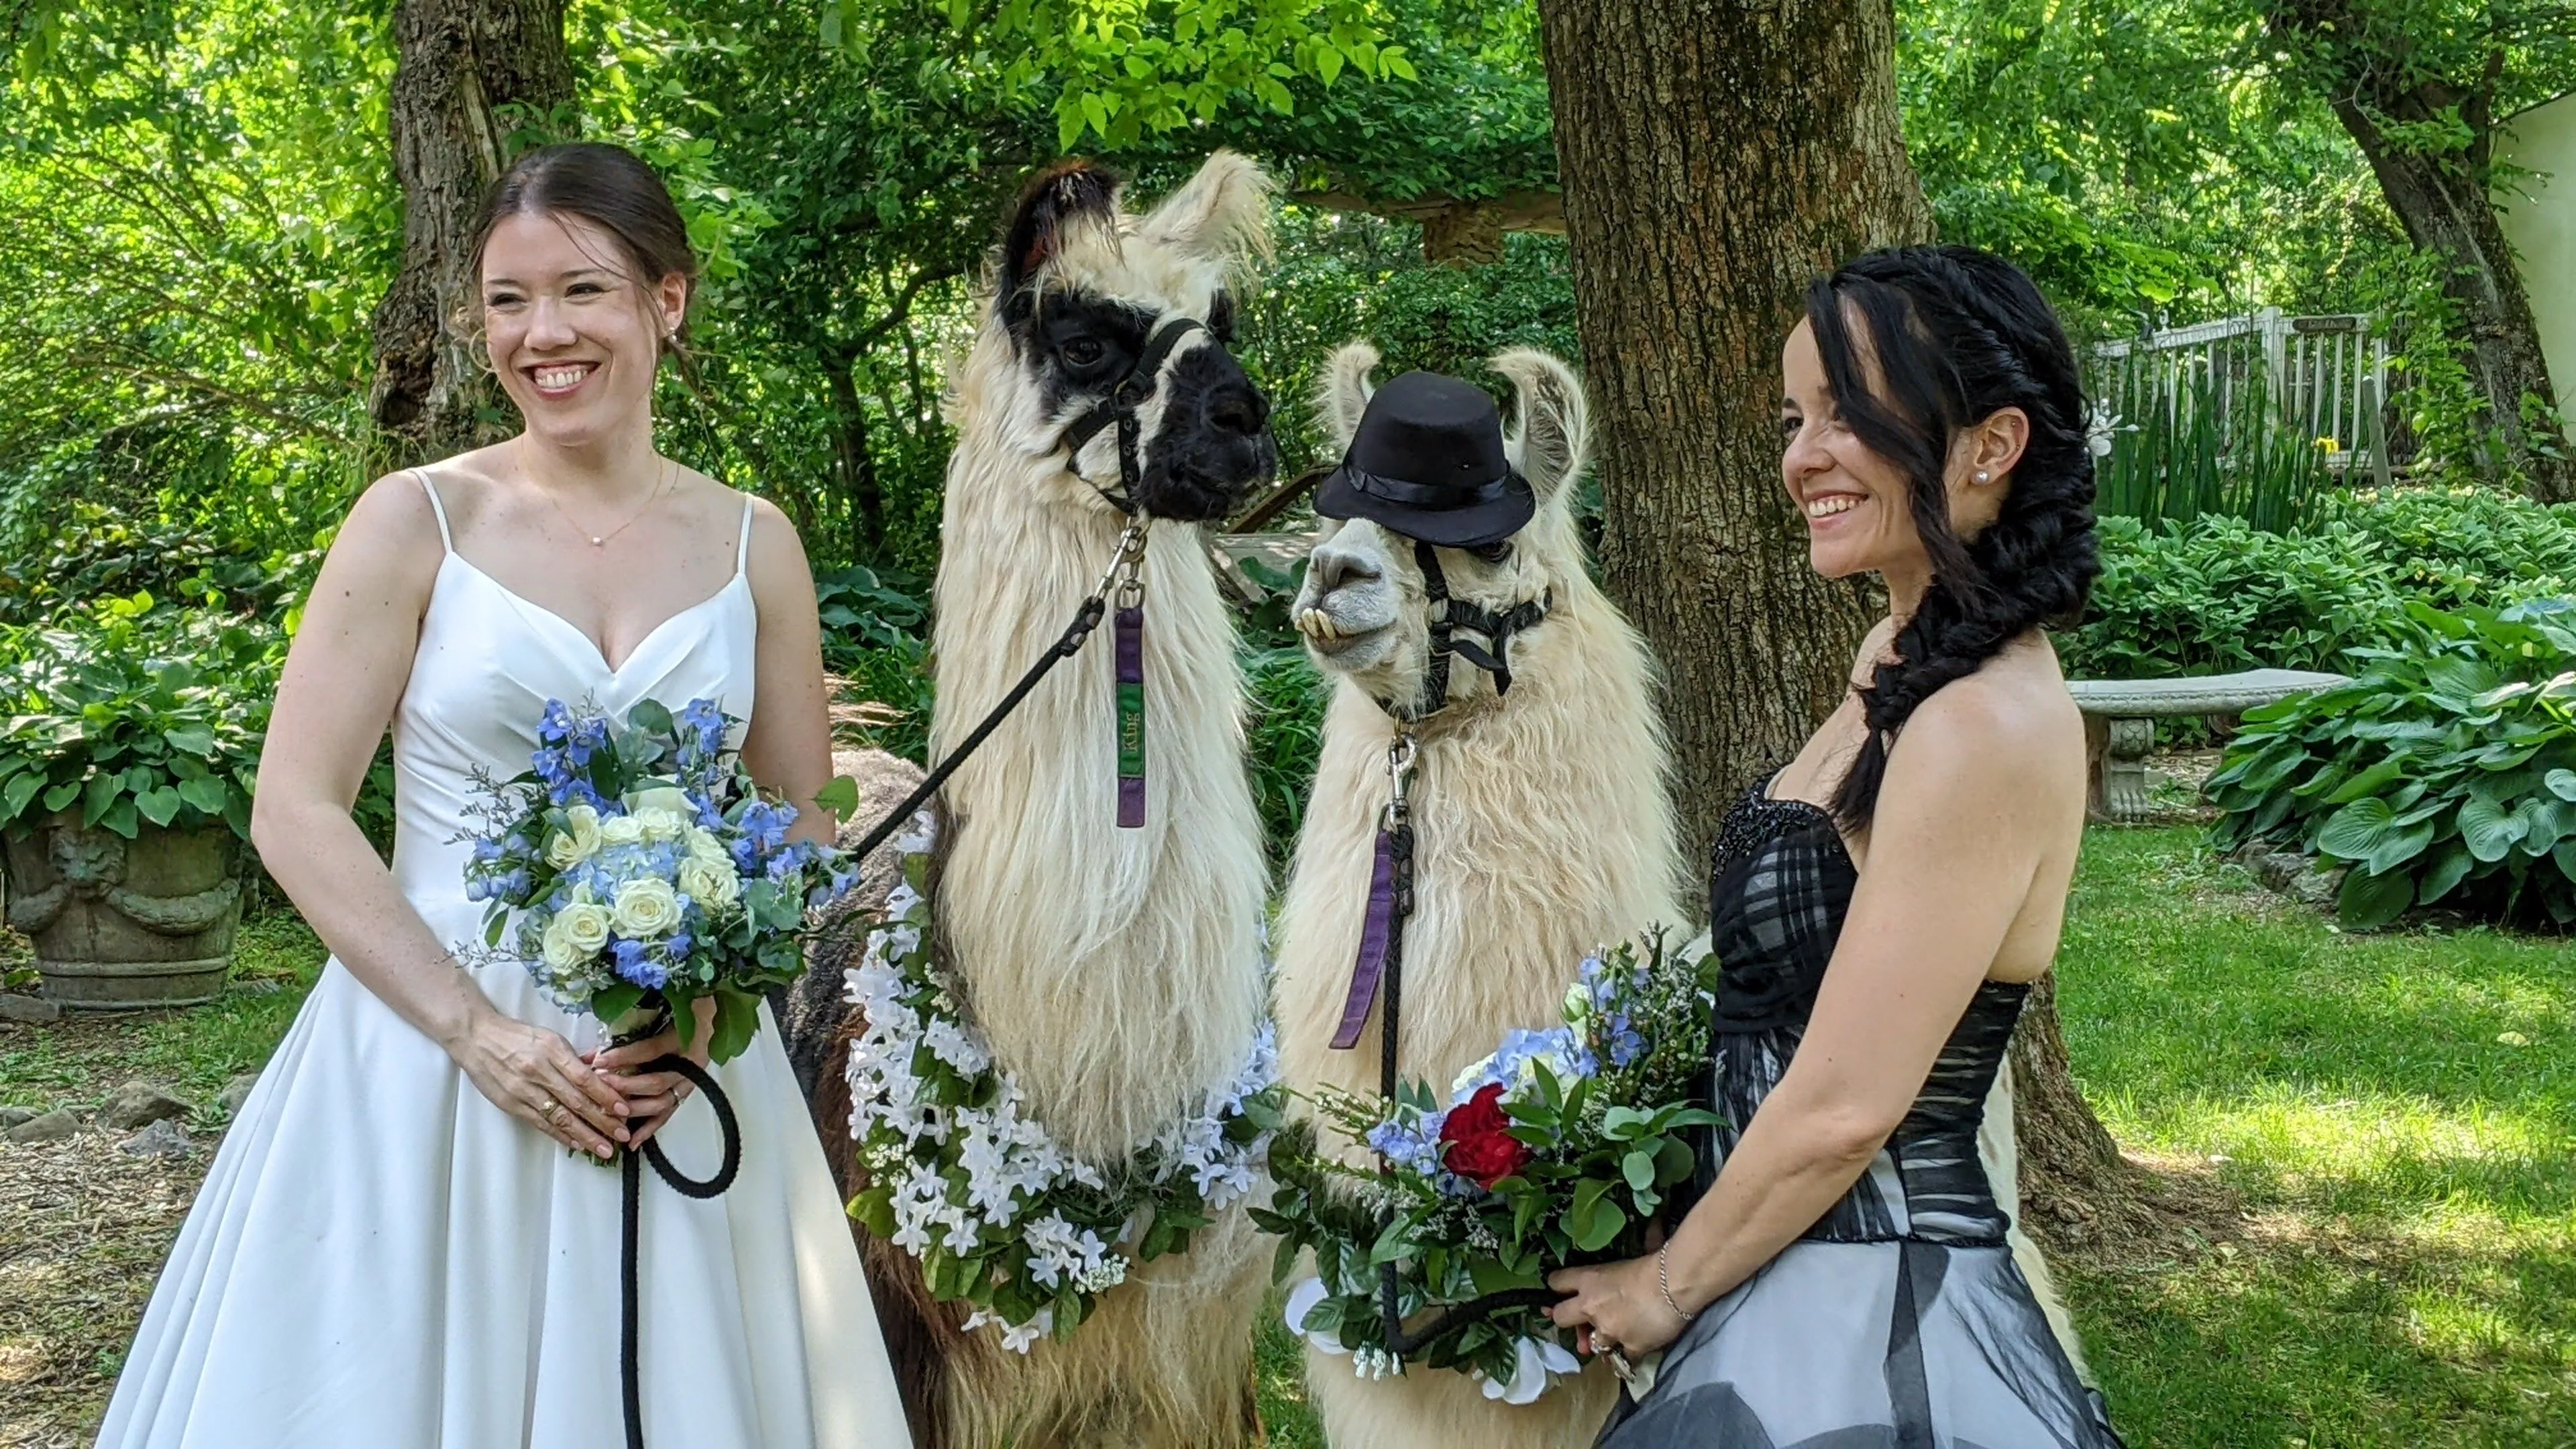 An image of llamas named King and Max at a wedding.